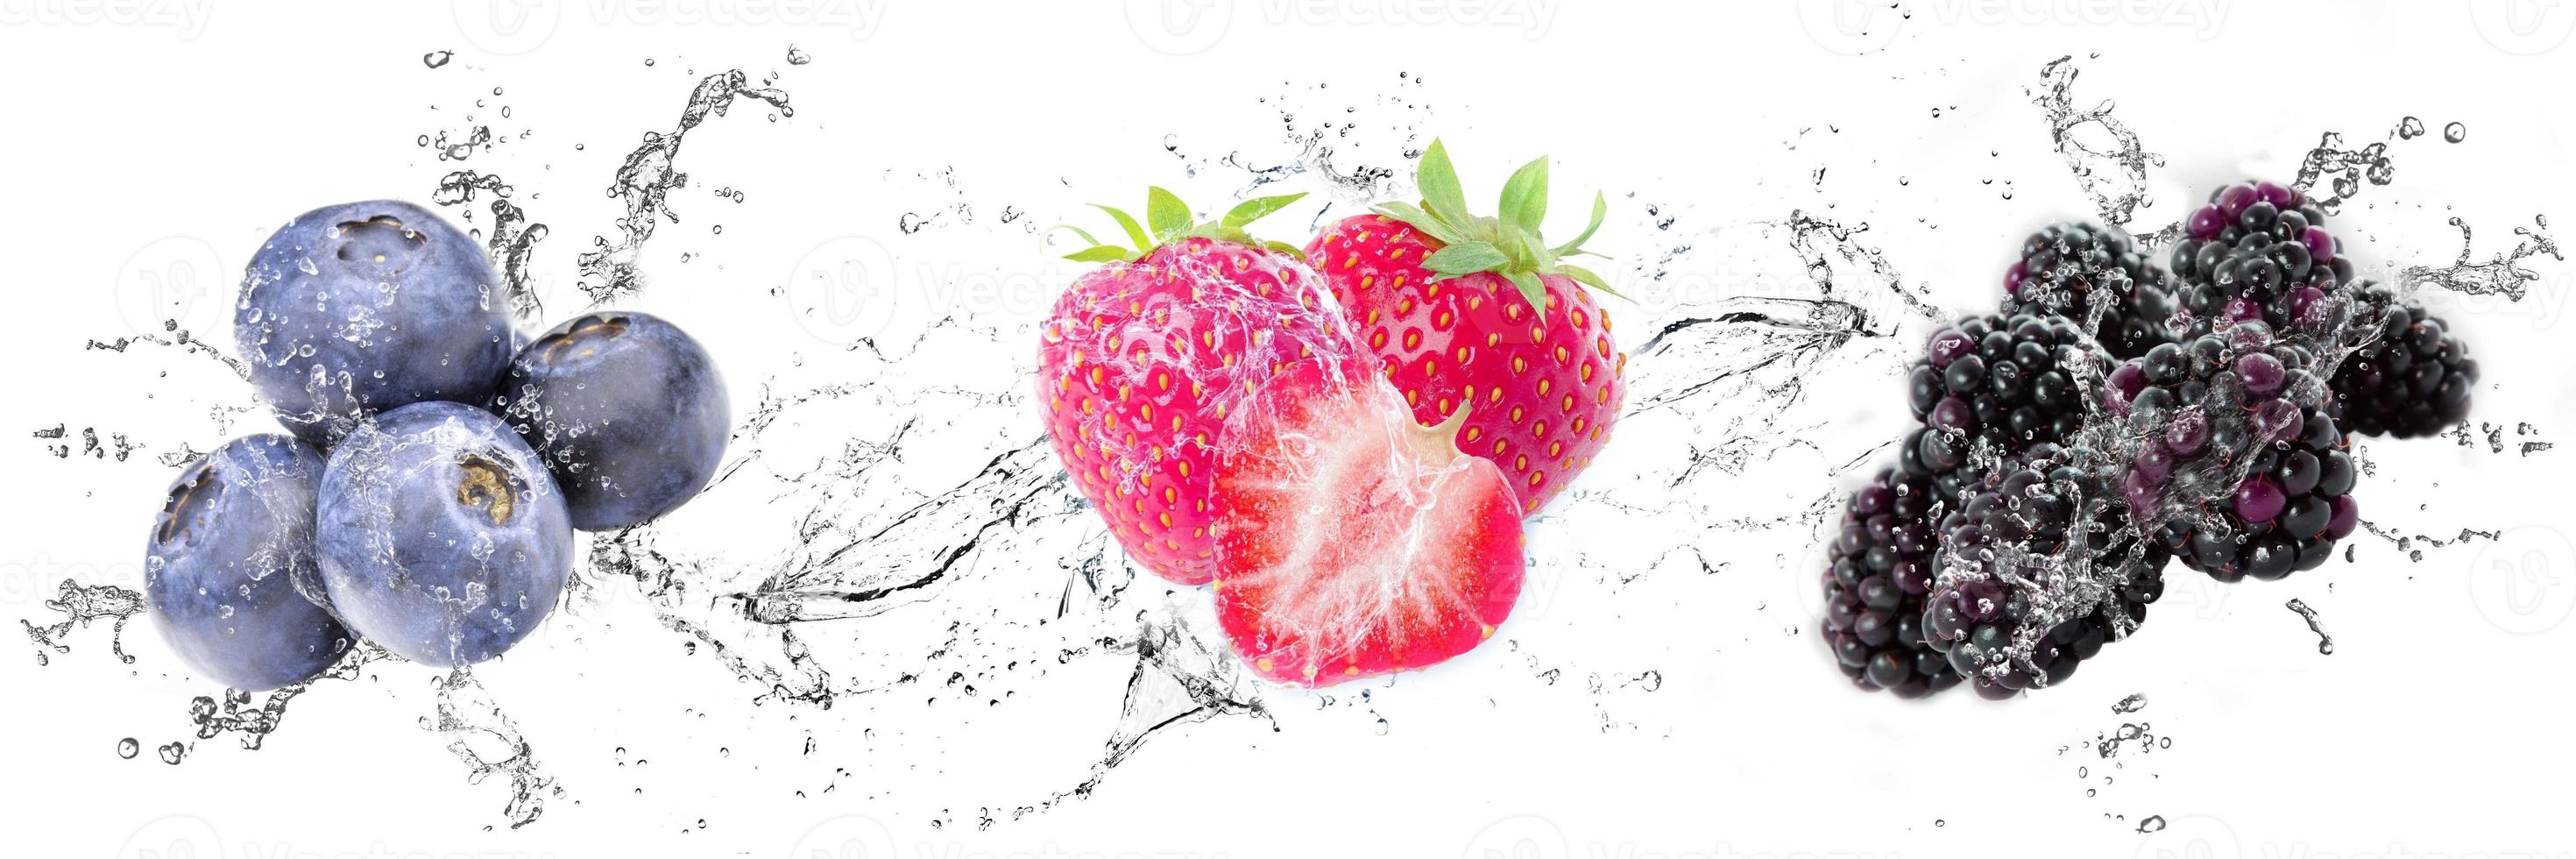 render gráfico con fresa, mora y arándano. imagen con gotas de agua, salpicaduras y frutas. fondo blanco aislado líquidos cristalinos. foto